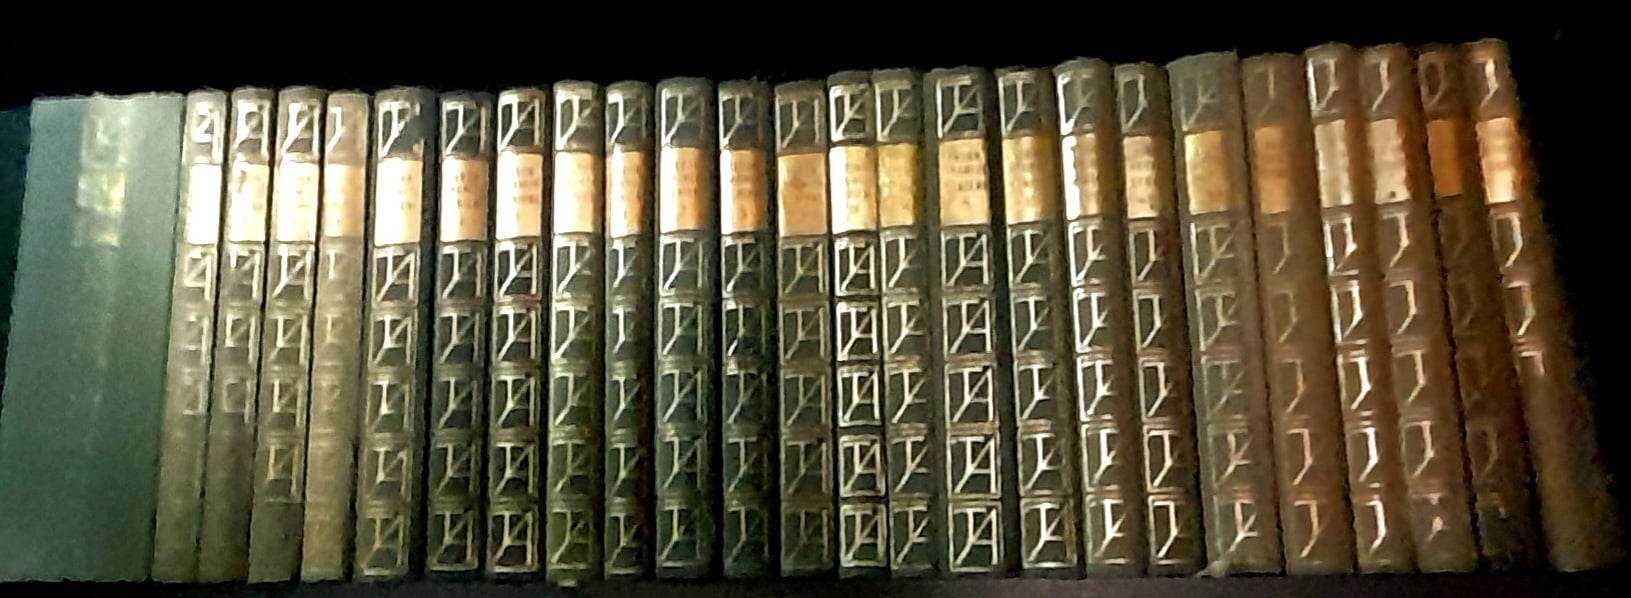 25 vol. Colectia SCRIERI de Tudor Arghezi, editie de Lux